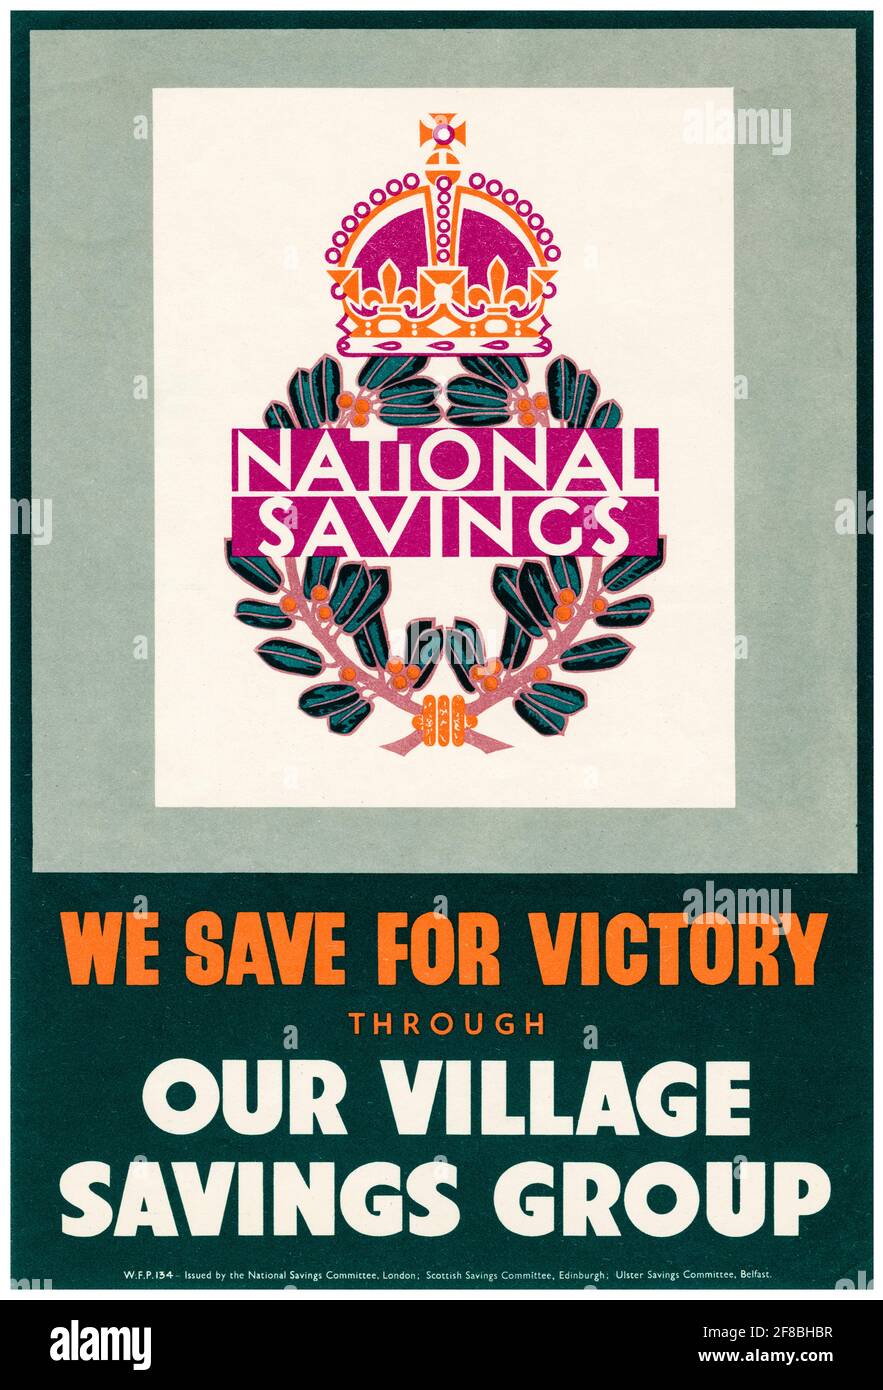 British, WW2, affiche d'épargne nationale : nous faisons des économies pour la victoire grâce à notre groupe d'épargne de village, 1942-1945 Banque D'Images